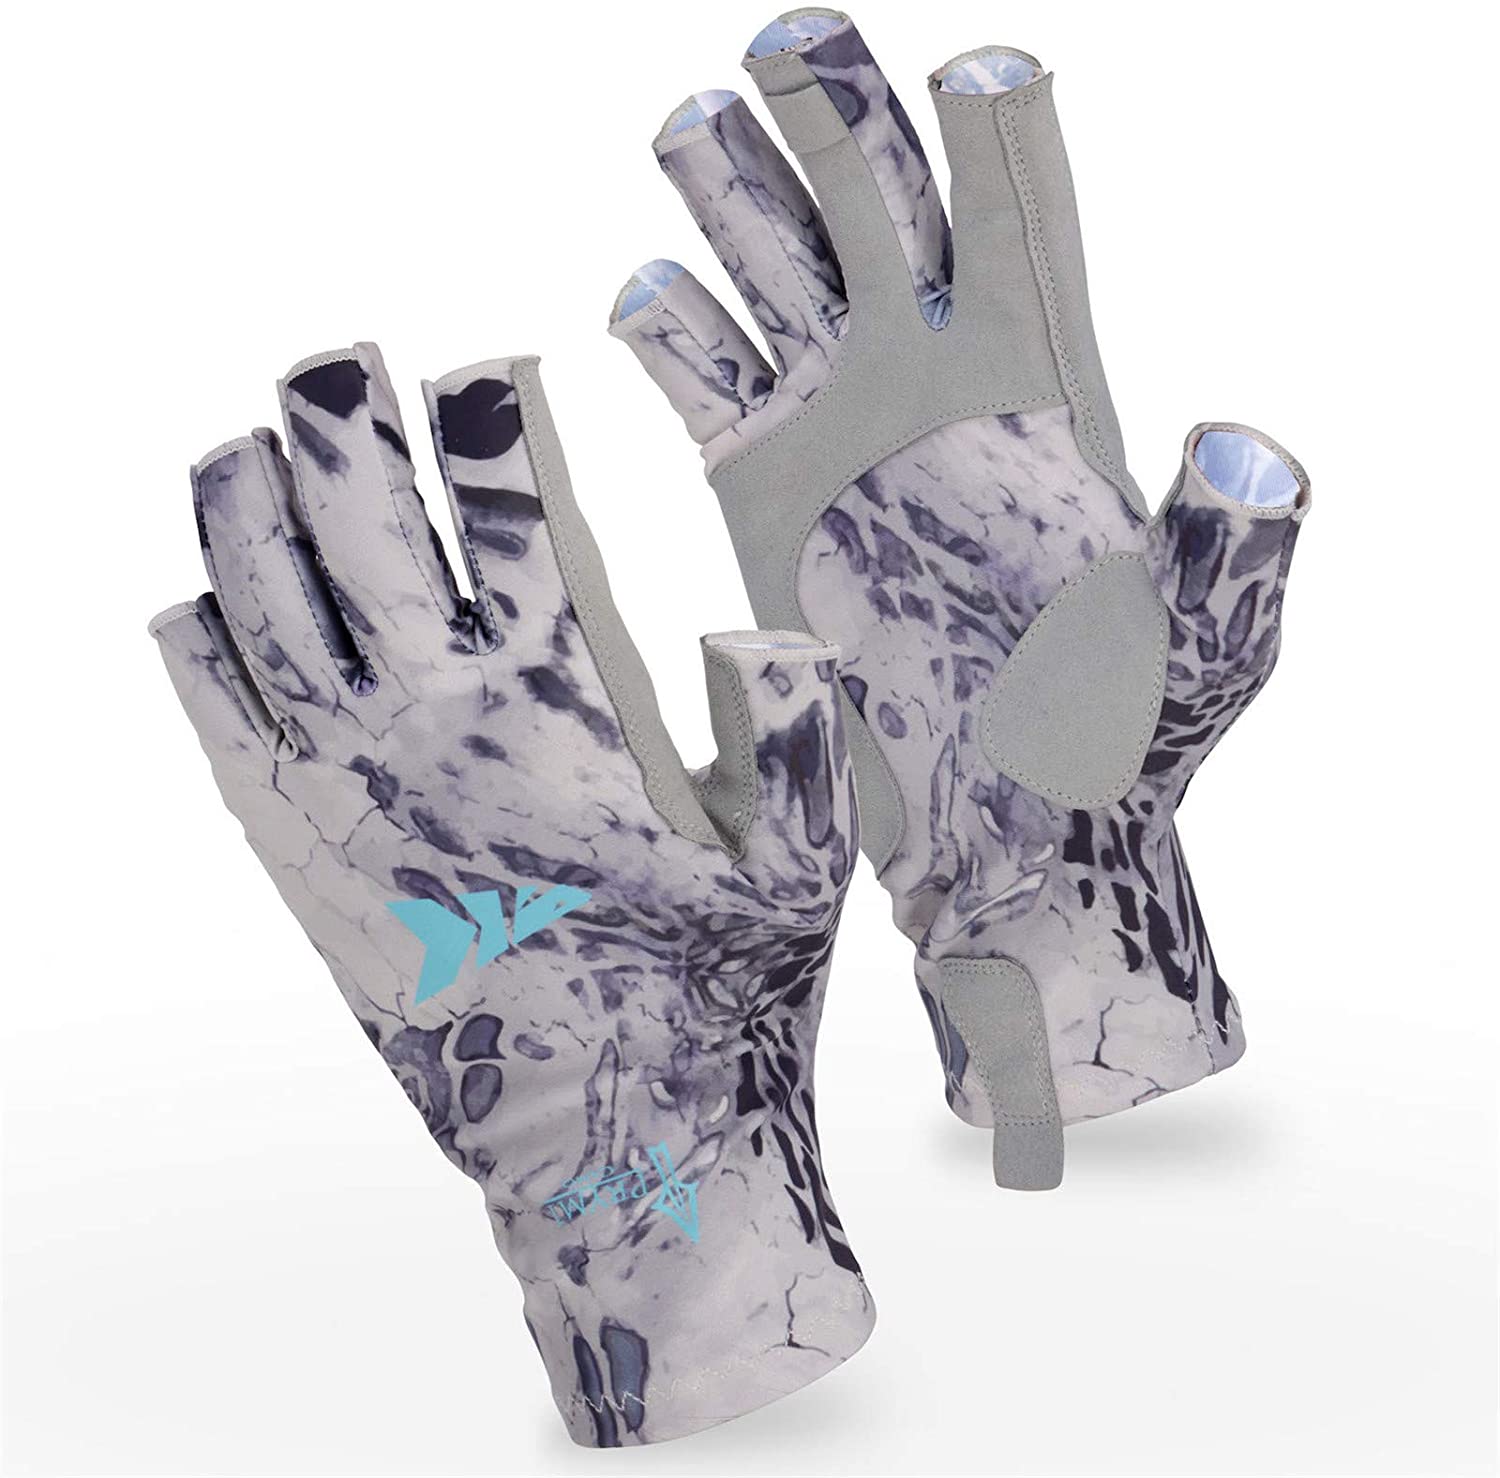 best Fishing Gloves | KastKing UV Protection Fishing Gloves For Men & Women